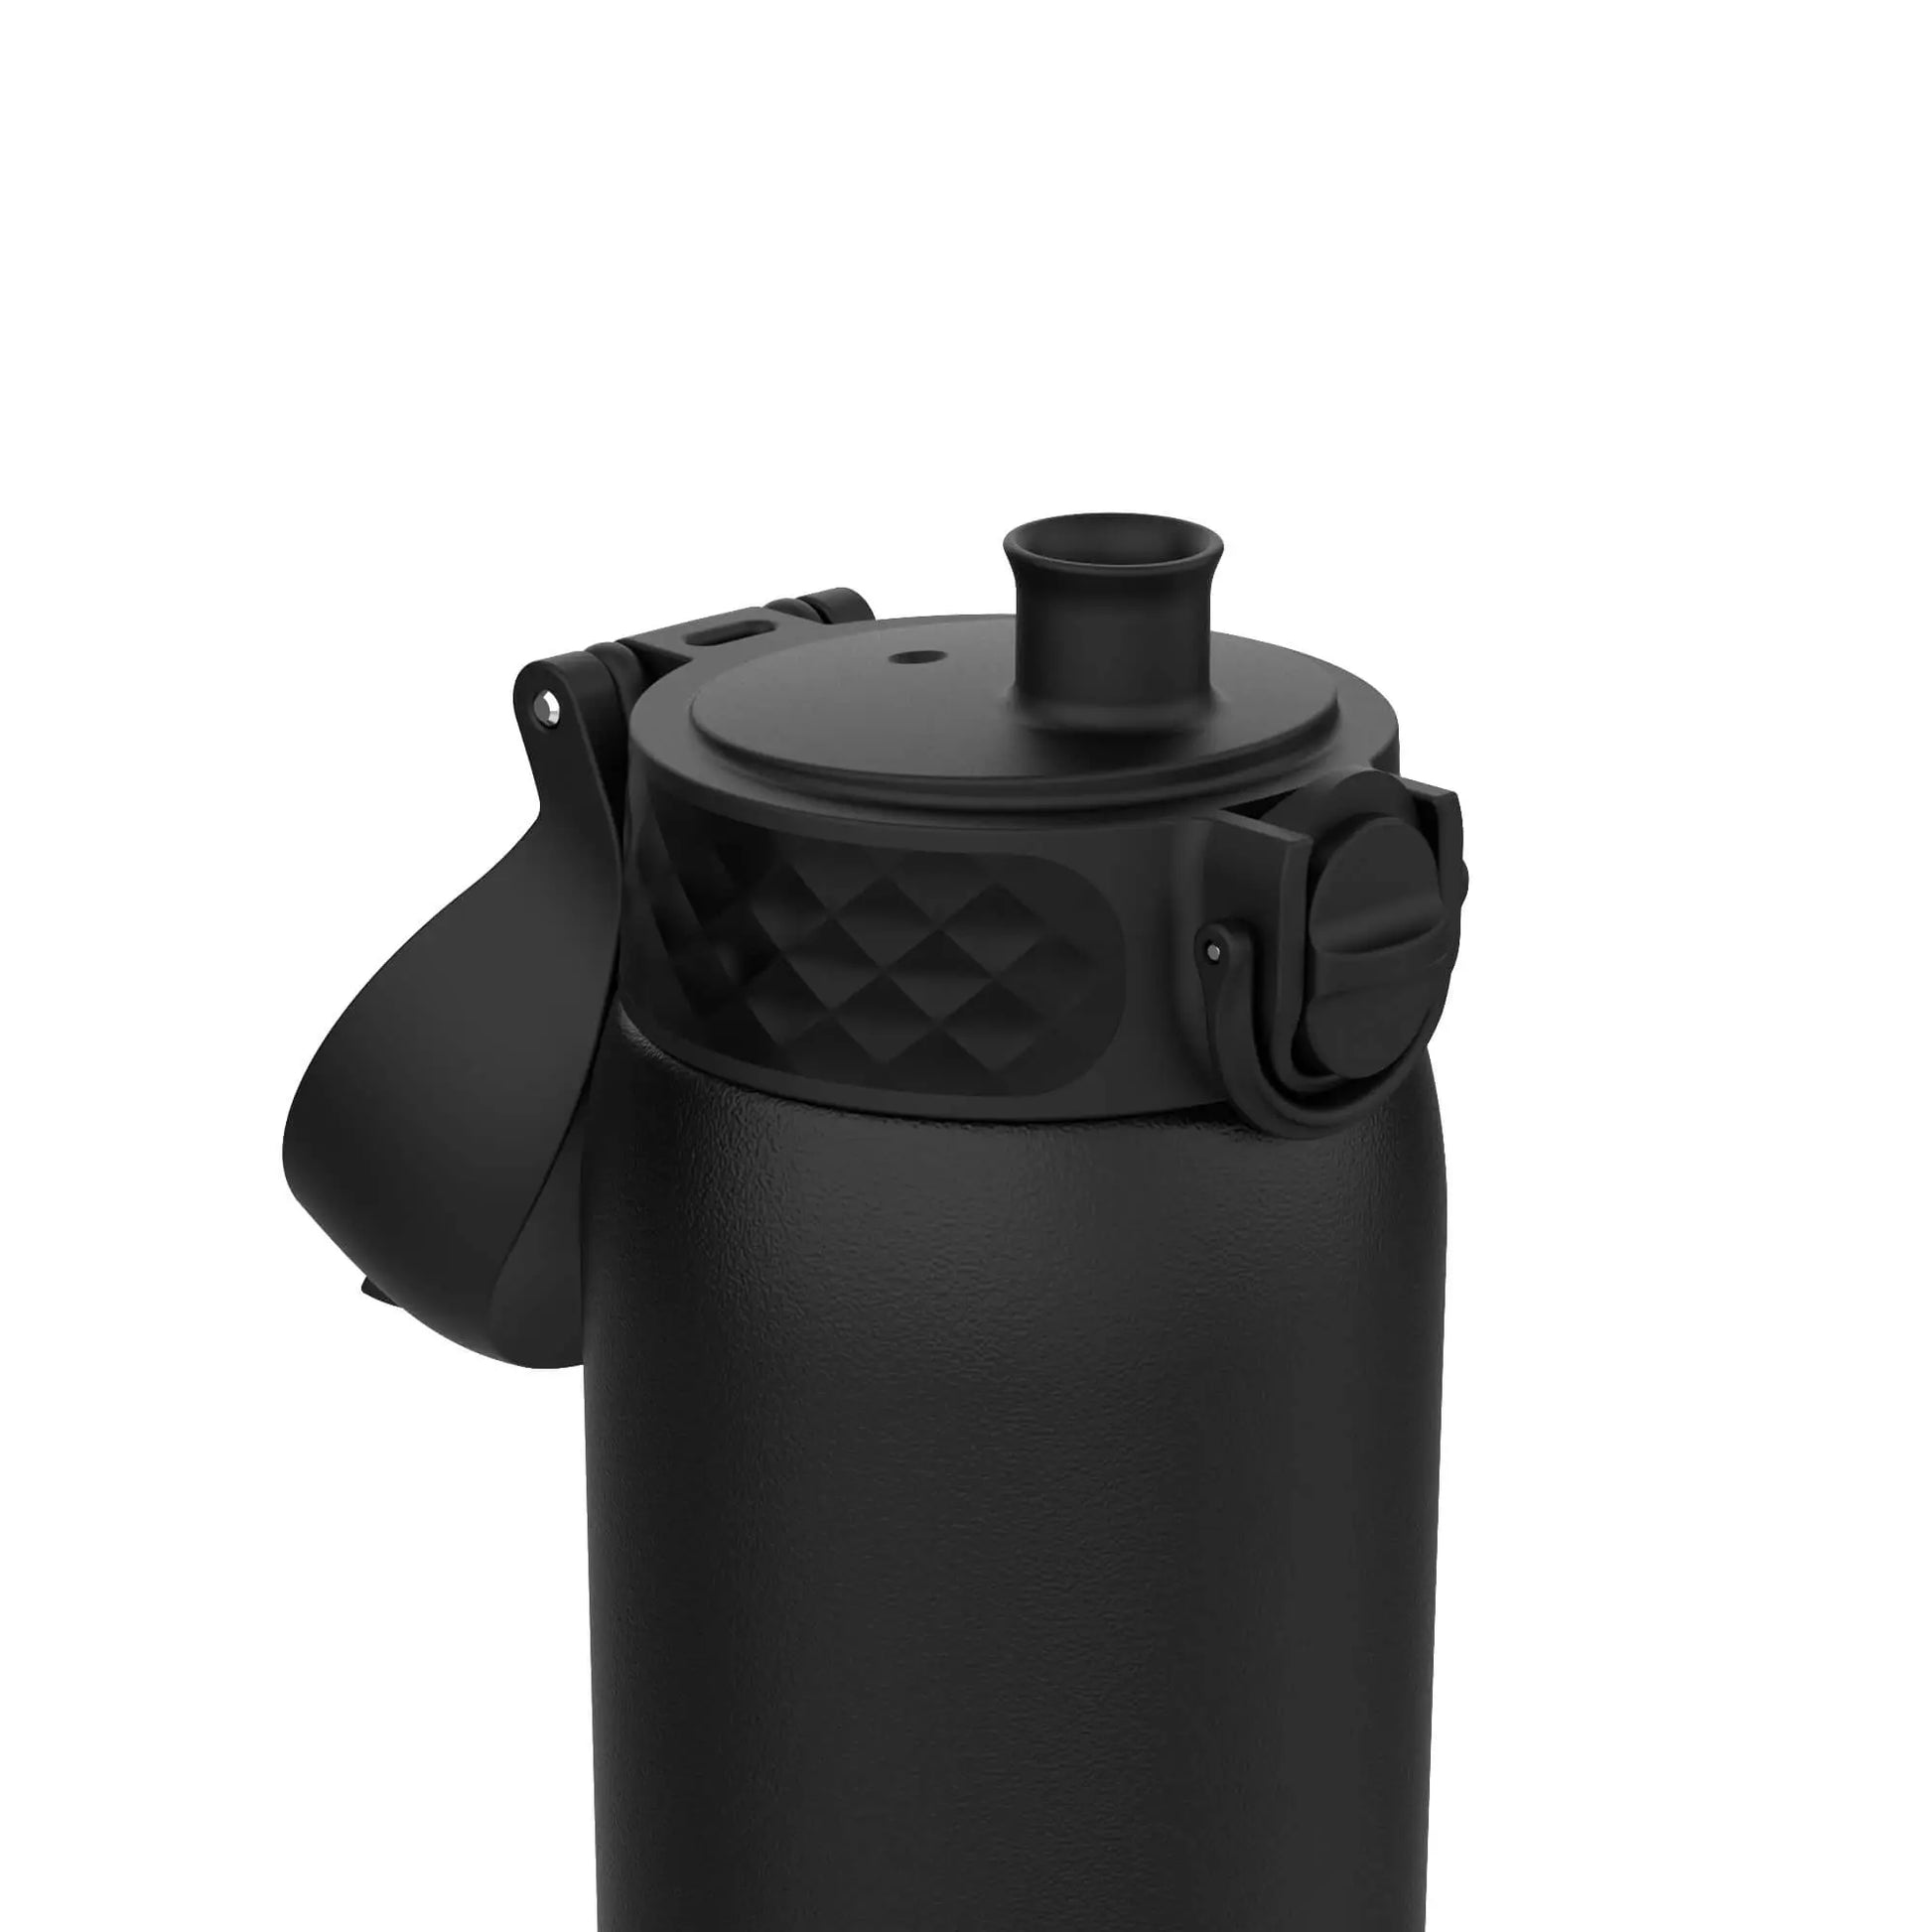 Leak Proof Water Bottle, Stainless Steel, Black, 400ml (13oz) - ION8